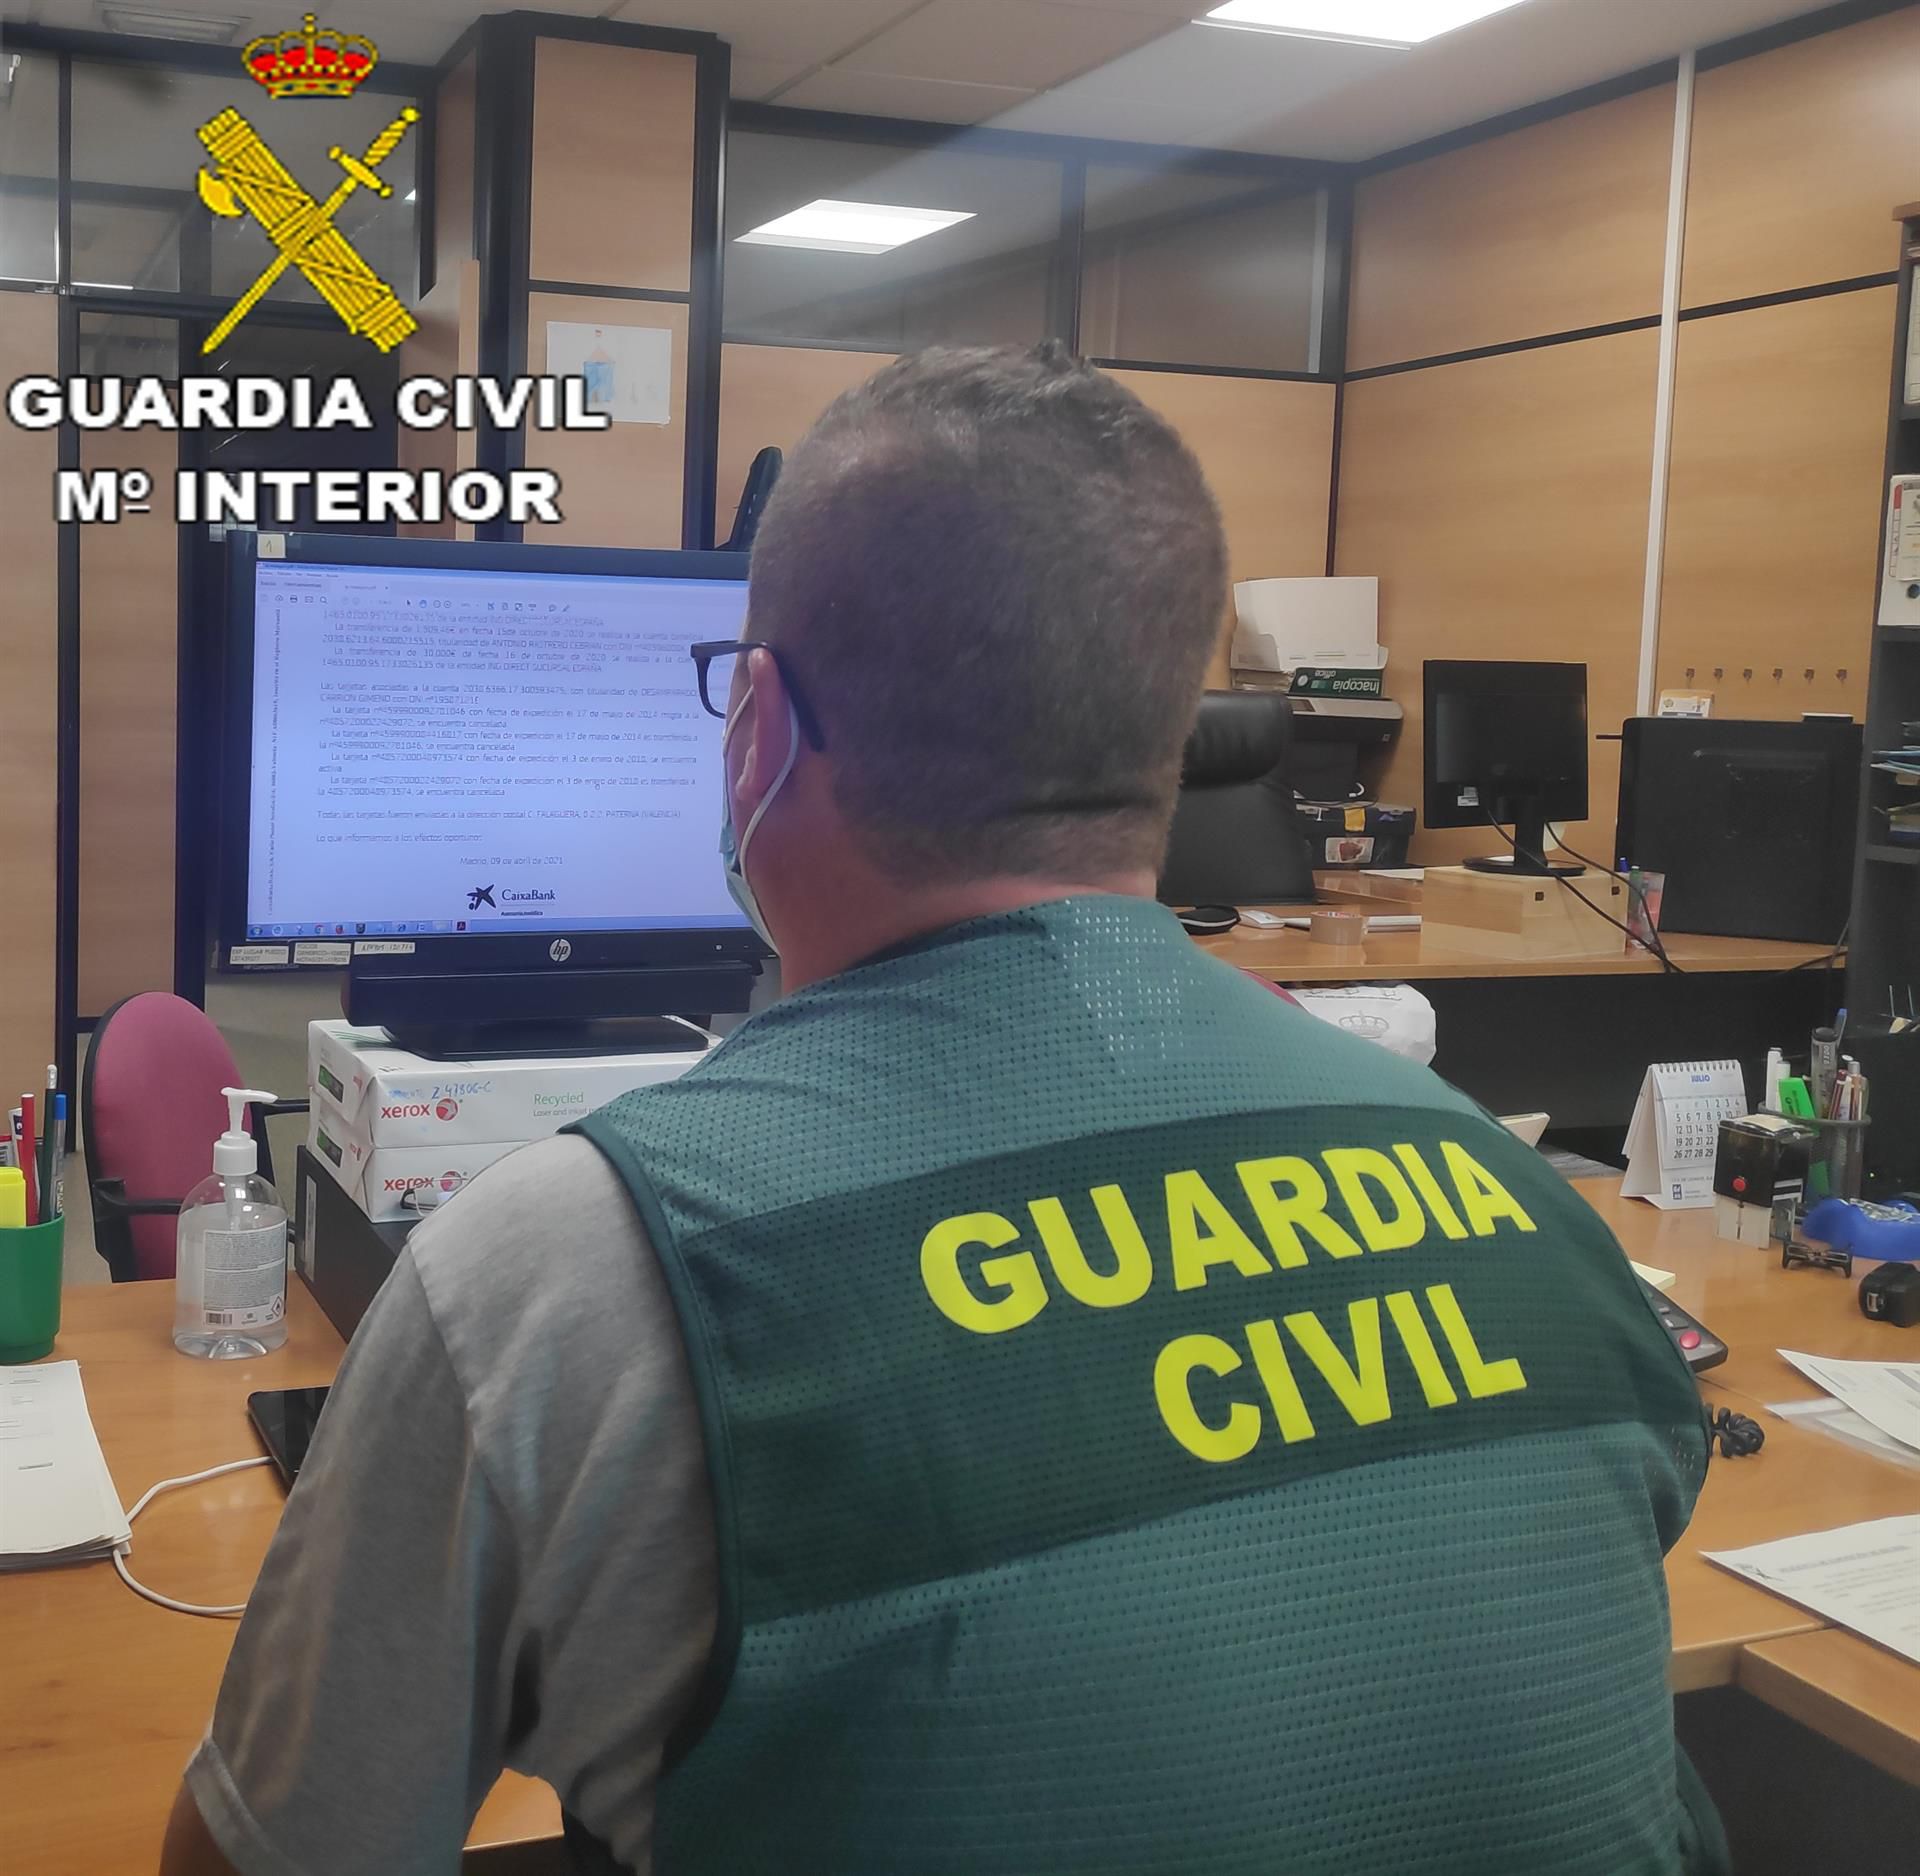 La Guardia Civil avisa de las consecuencias penales y económicas que conlleva la alerta de falsa amenaza de bomba